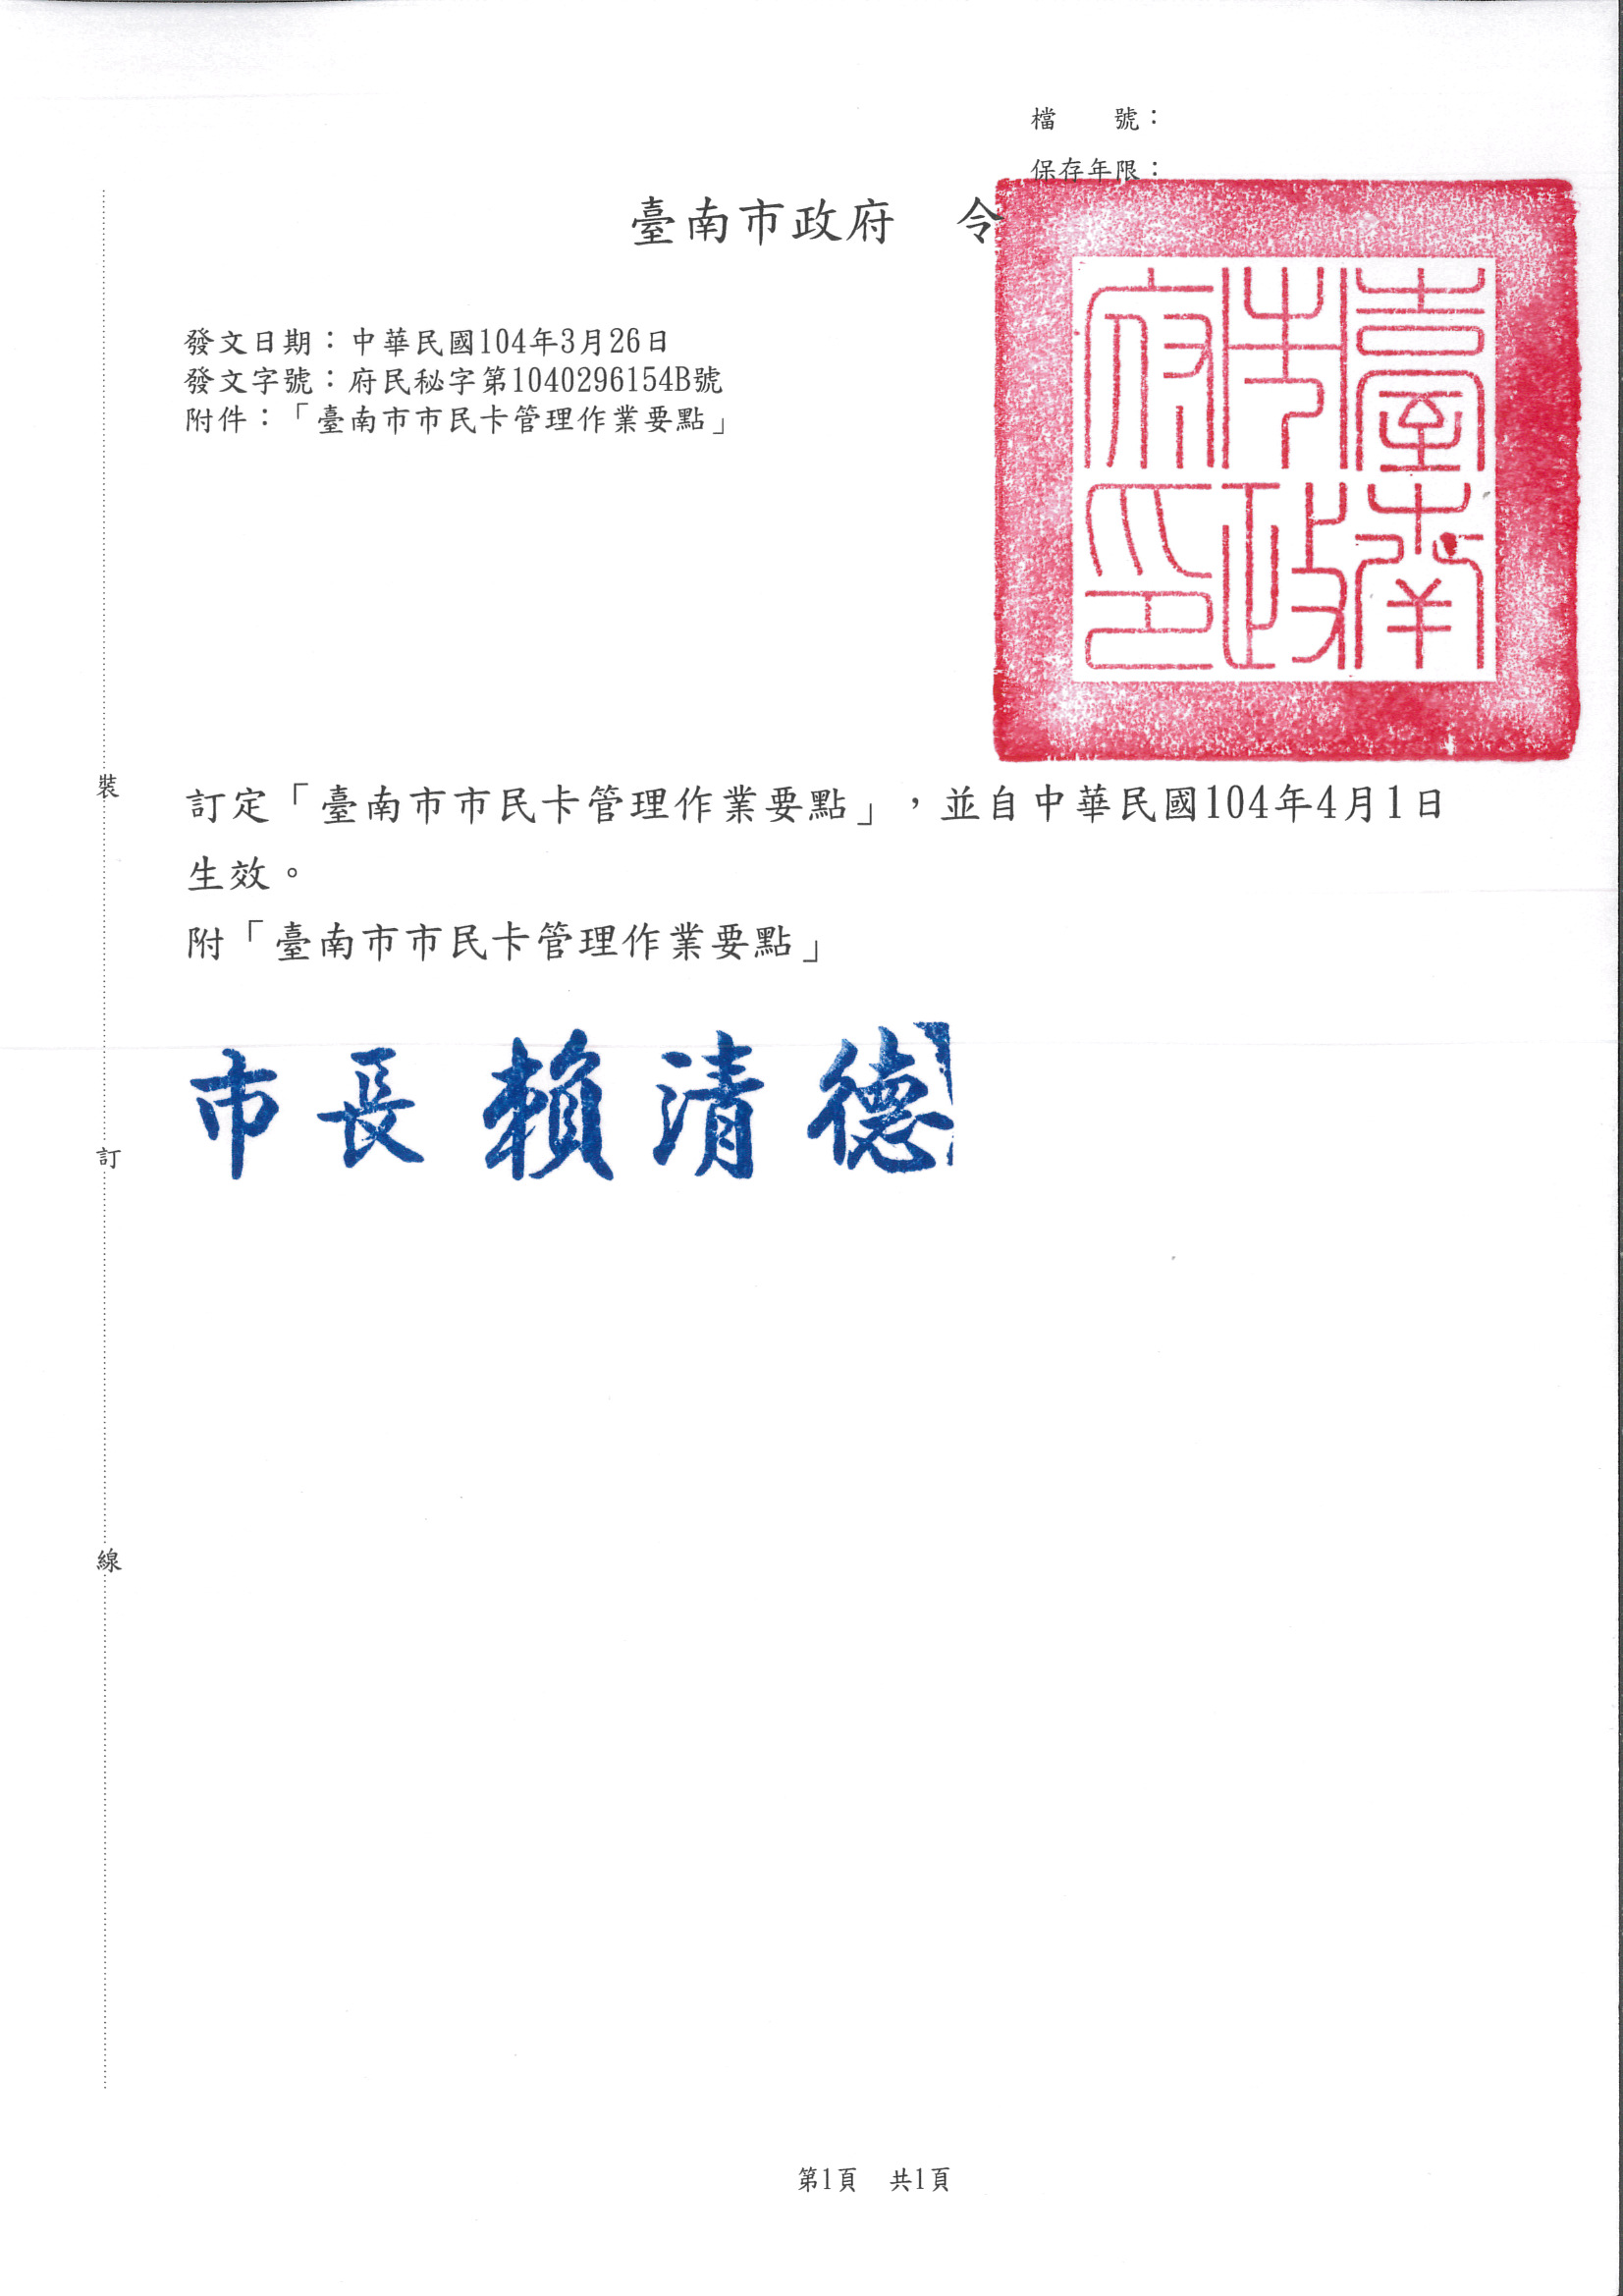 臺南市市民卡管理作業要點發布令